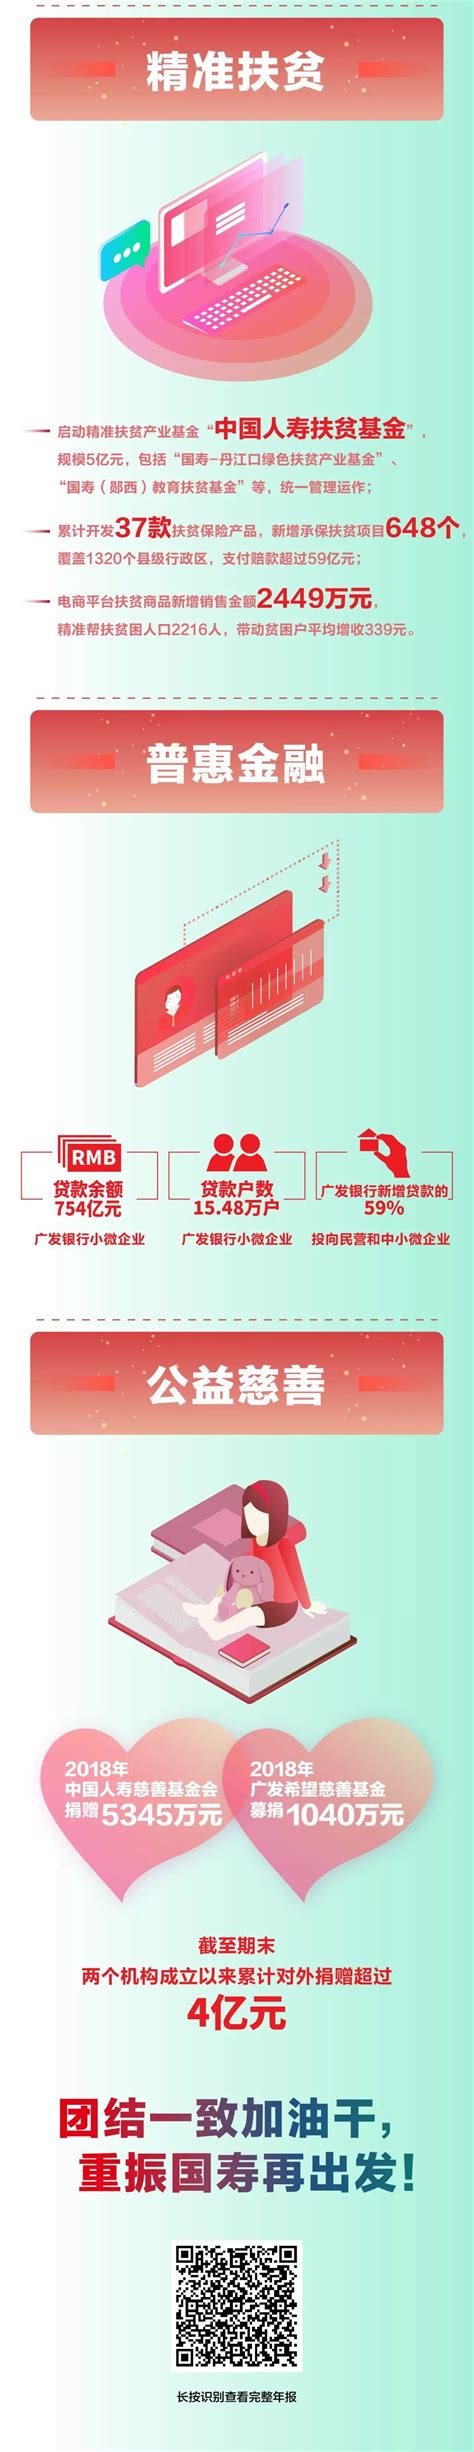 中国人寿发布2018年度报告 - 商业 - 济宁新闻网